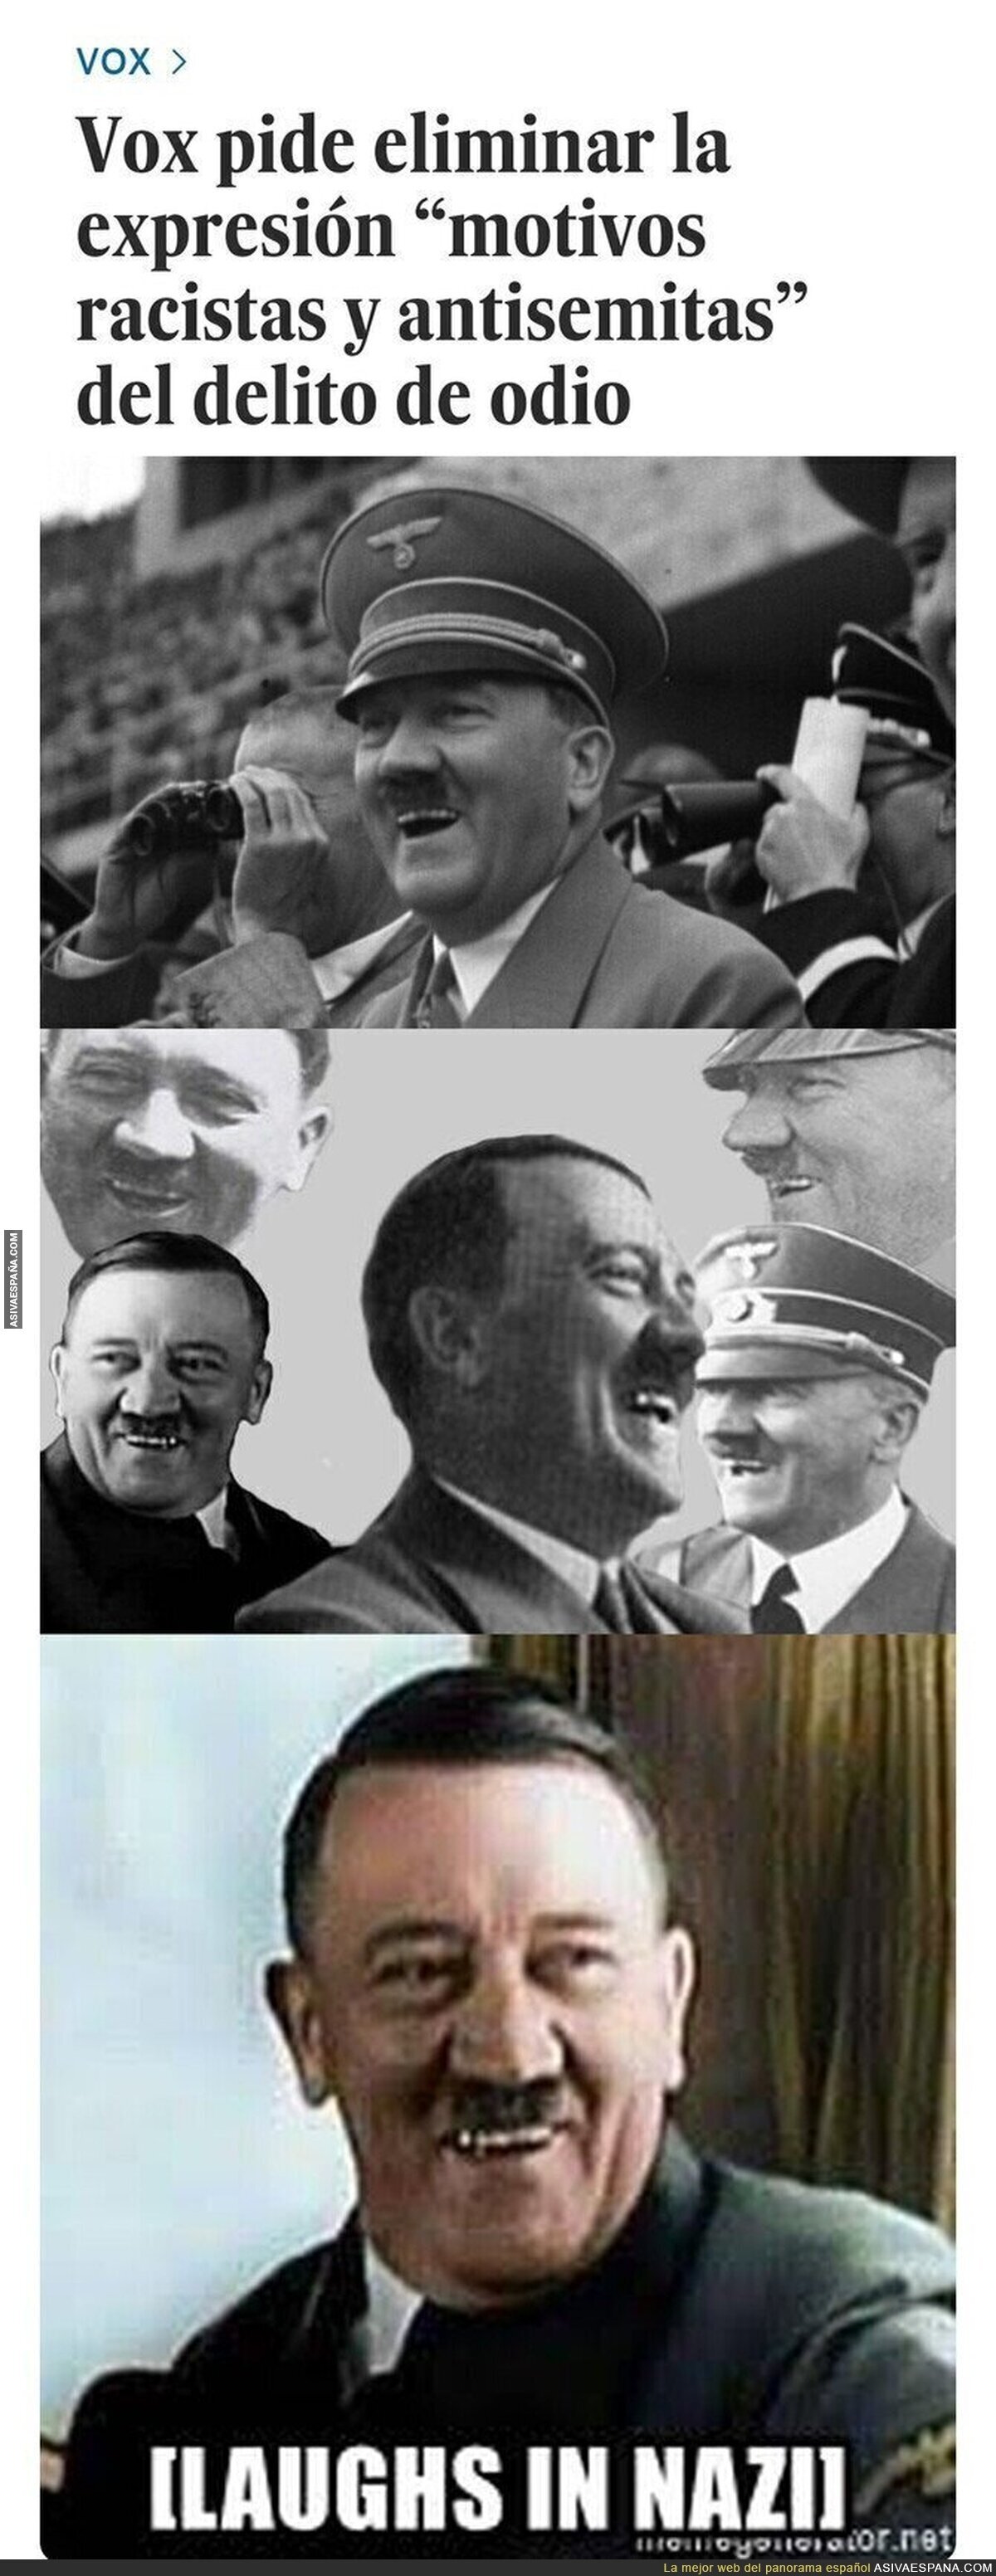 Hitler se lo está pasando en grande con VOX